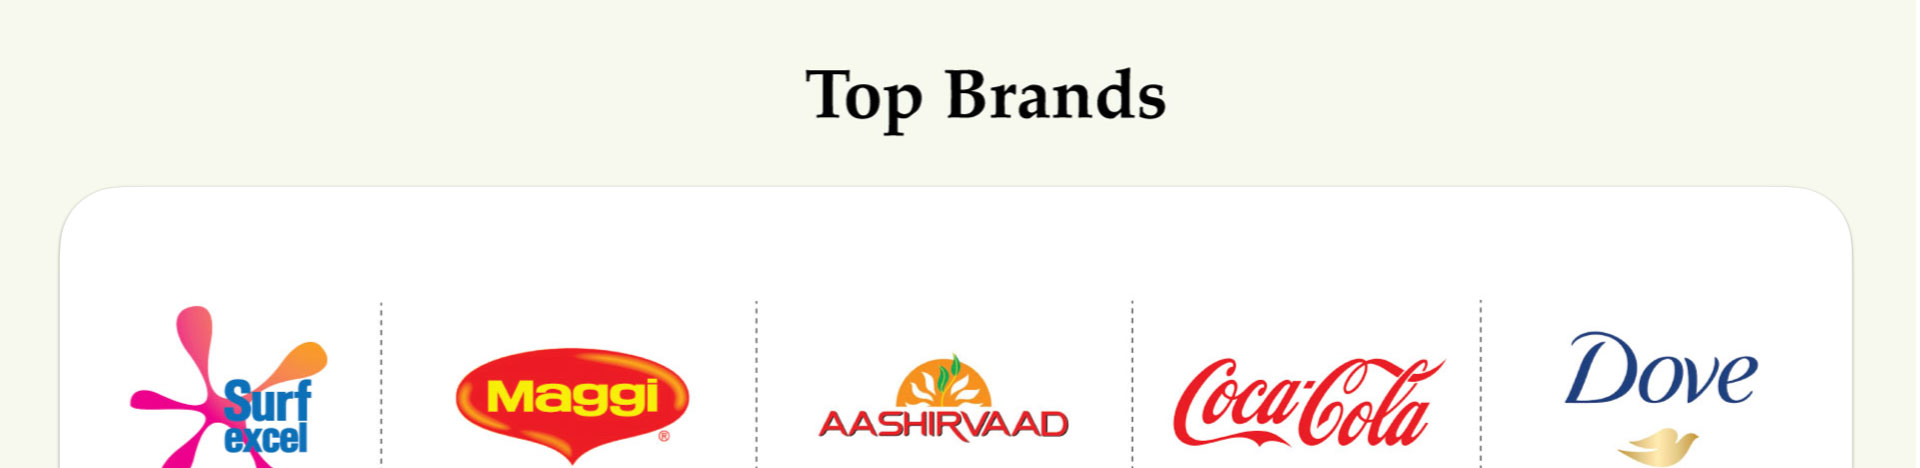 Top Brands 1